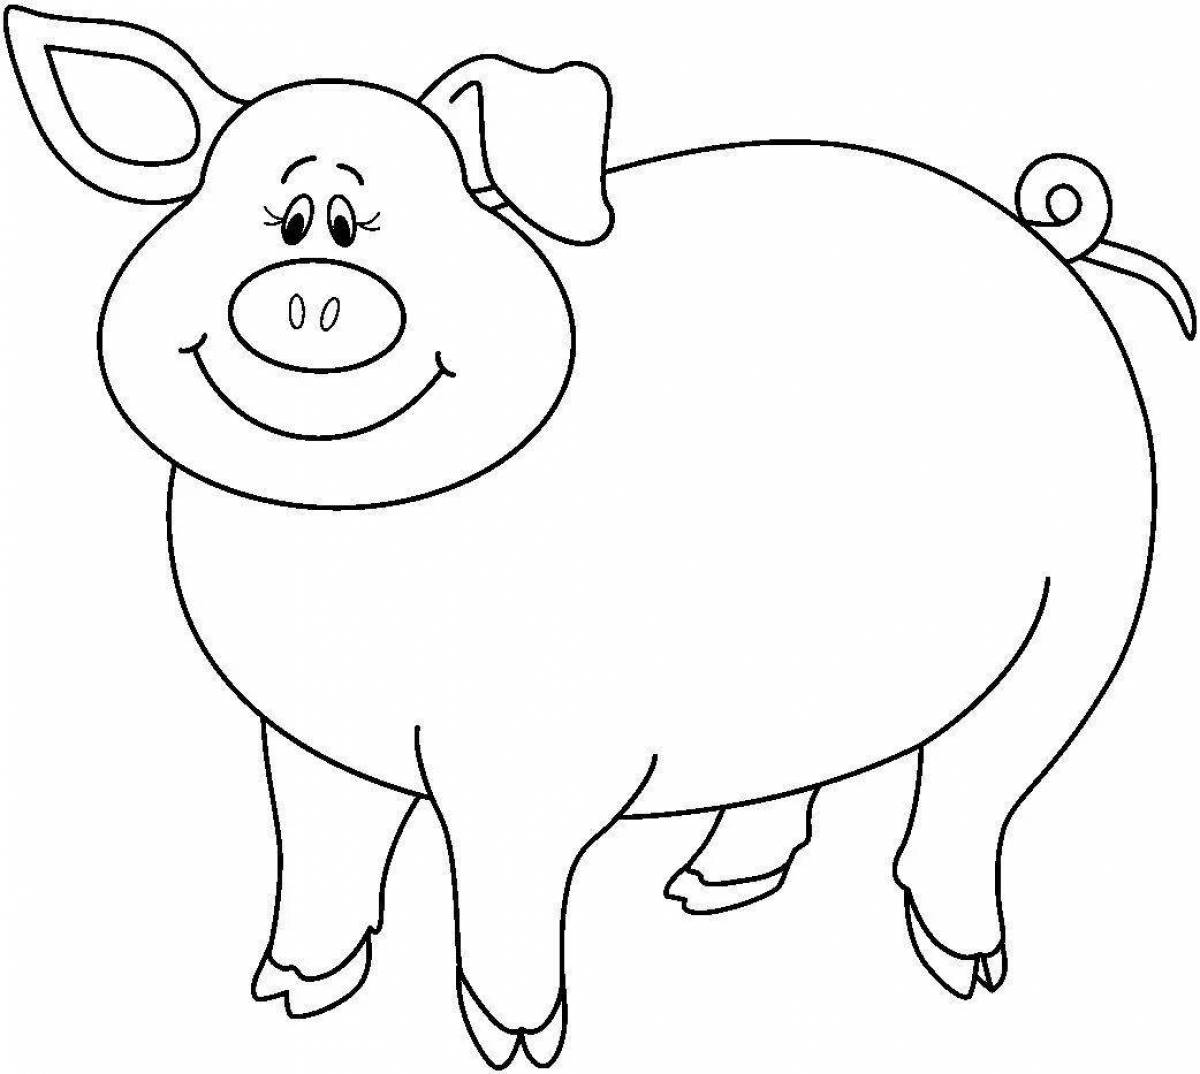 Joyful pig coloring for kids